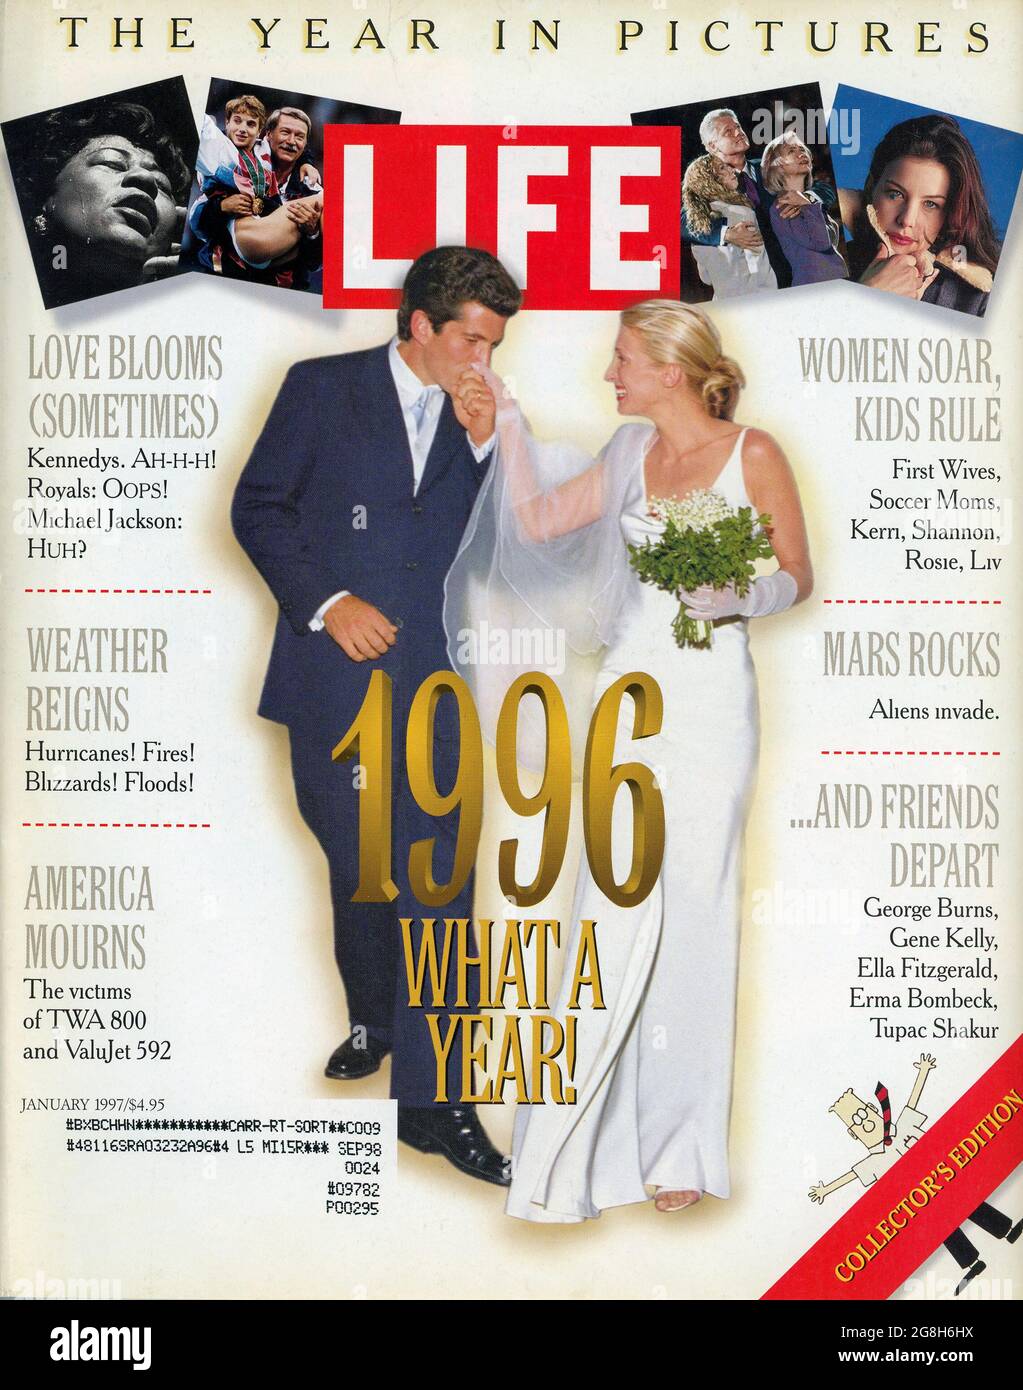 Life Magazine Cover, numéro de janvier 1997, The Year in Pictures of 1996, États-Unis Banque D'Images